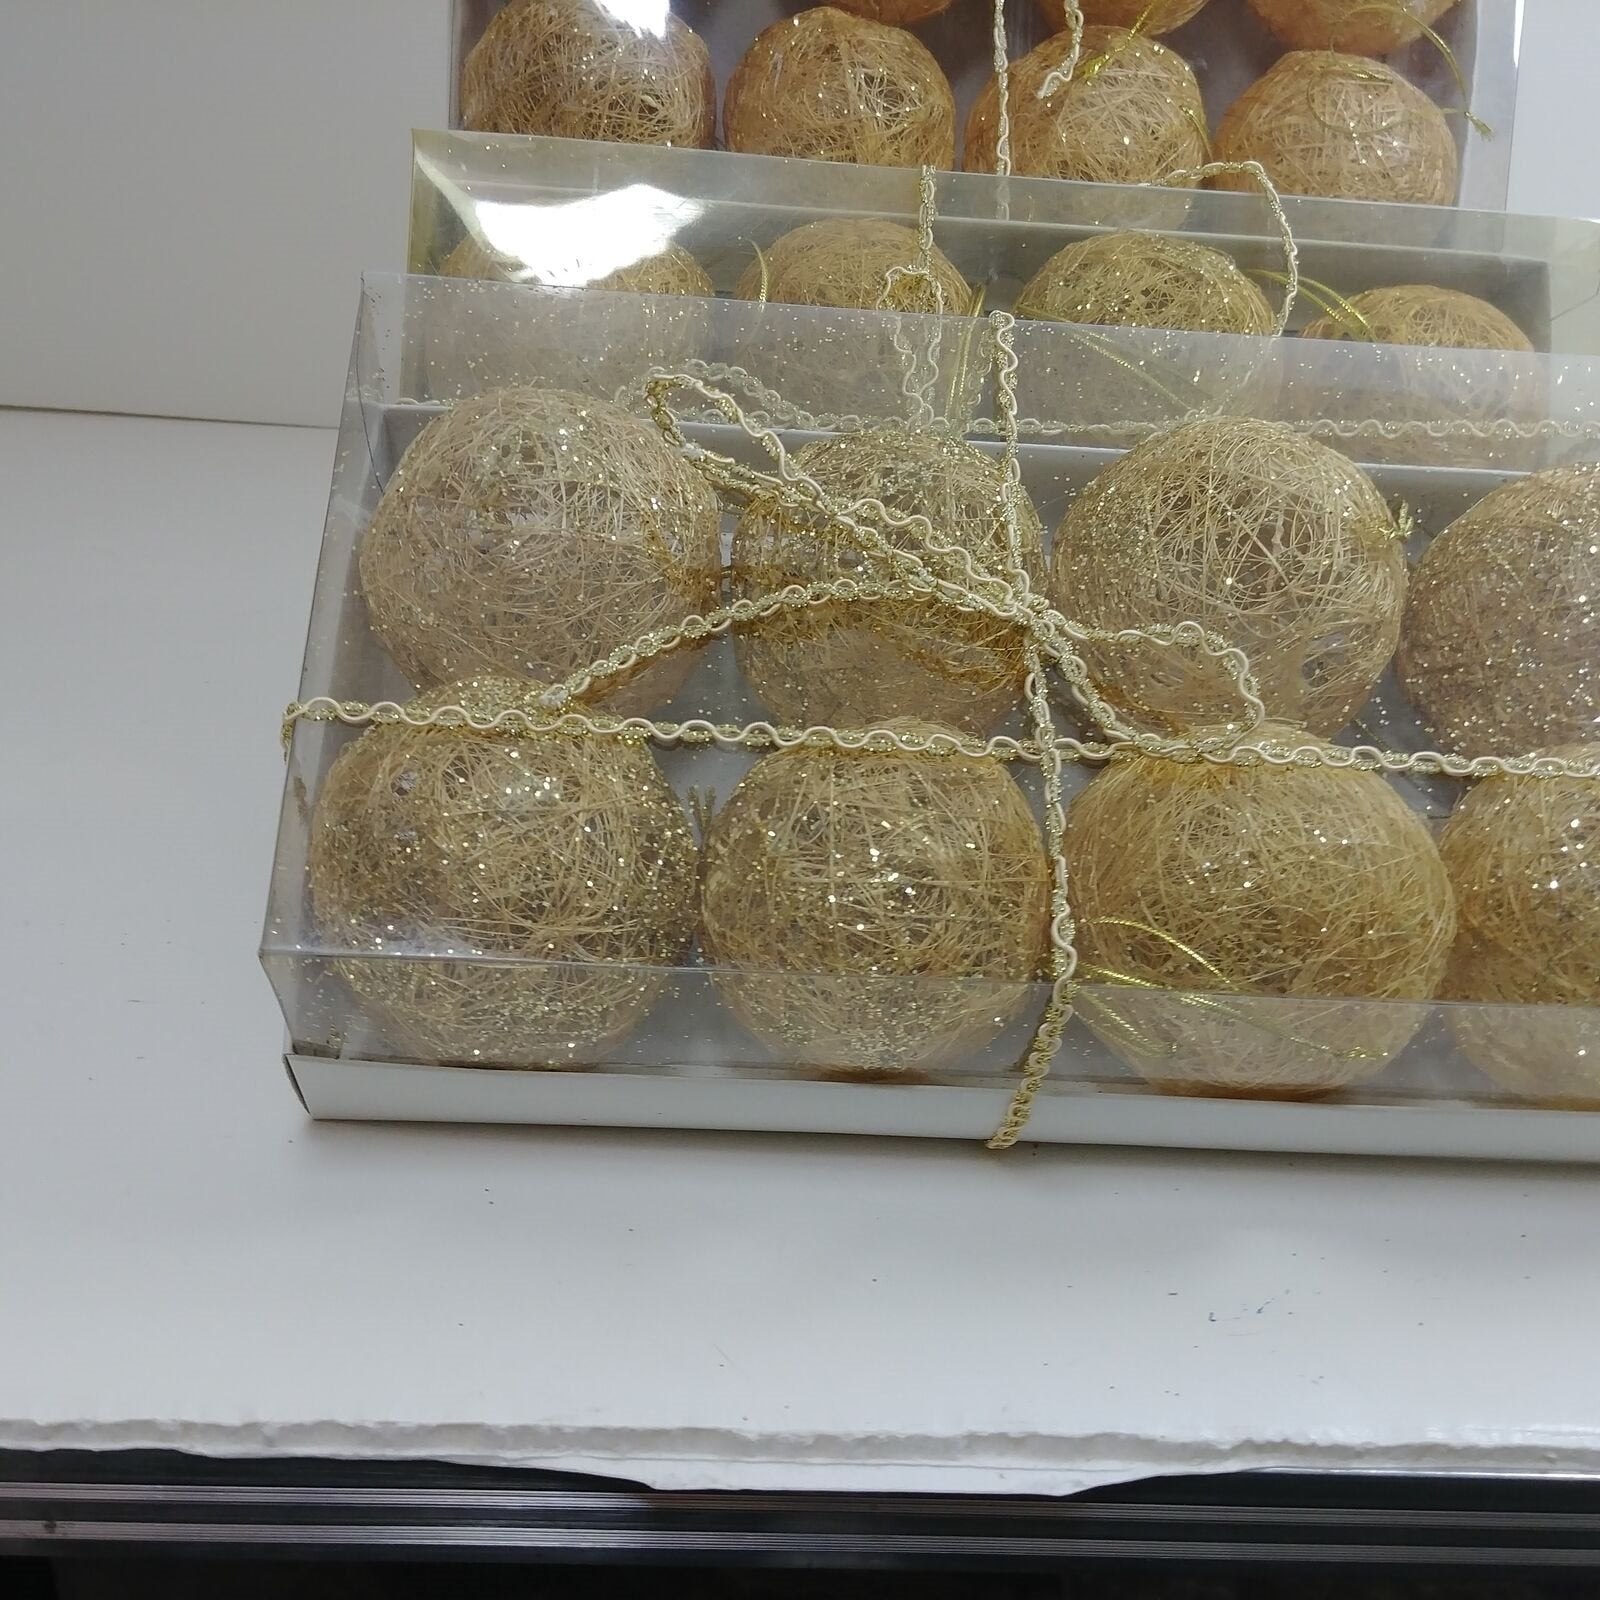 Decorative Gold Spun Grass Raffia Balls w/ Hanger Boxed Set of 8 pcs. NIB